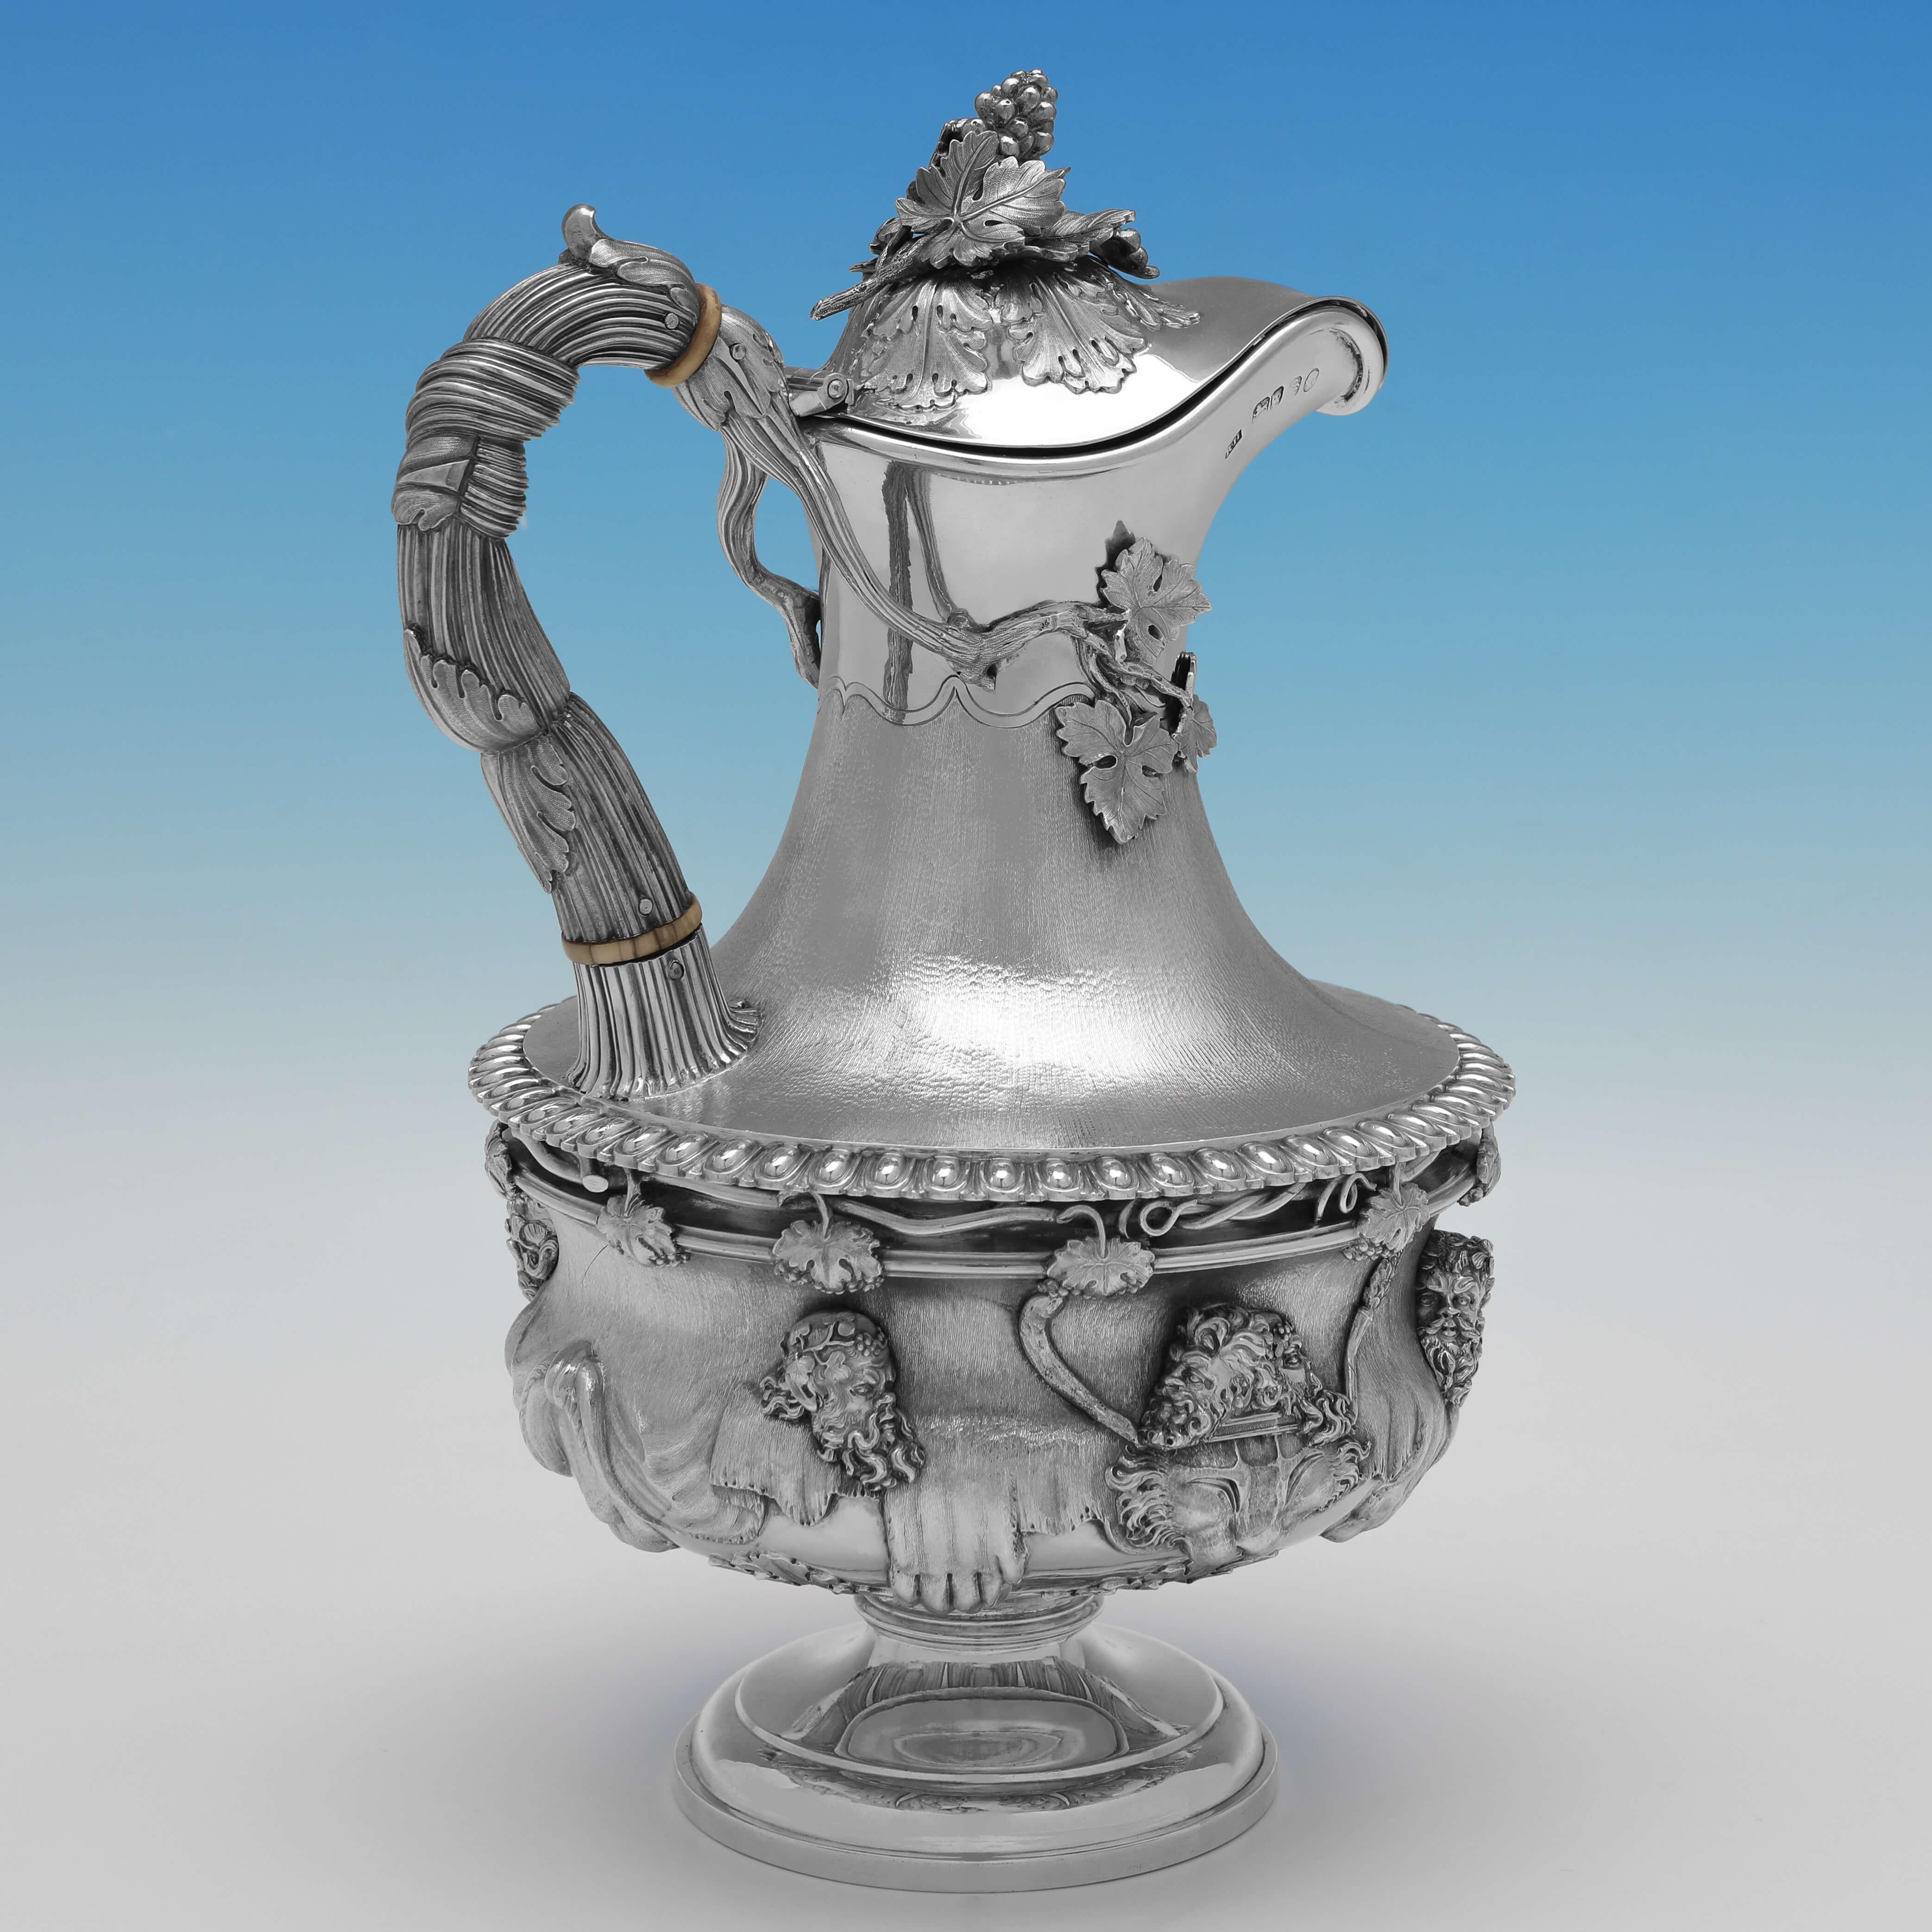 Dieser beeindruckende viktorianische Krug aus antikem Sterlingsilber, der 1853 in London von Robert Hennell III. gestempelt wurde, ist ein sehr seltenes Exemplar, das im Stil der berühmten Warwick-Vase gestaltet wurde. 

Der Krug ist 28,5 cm